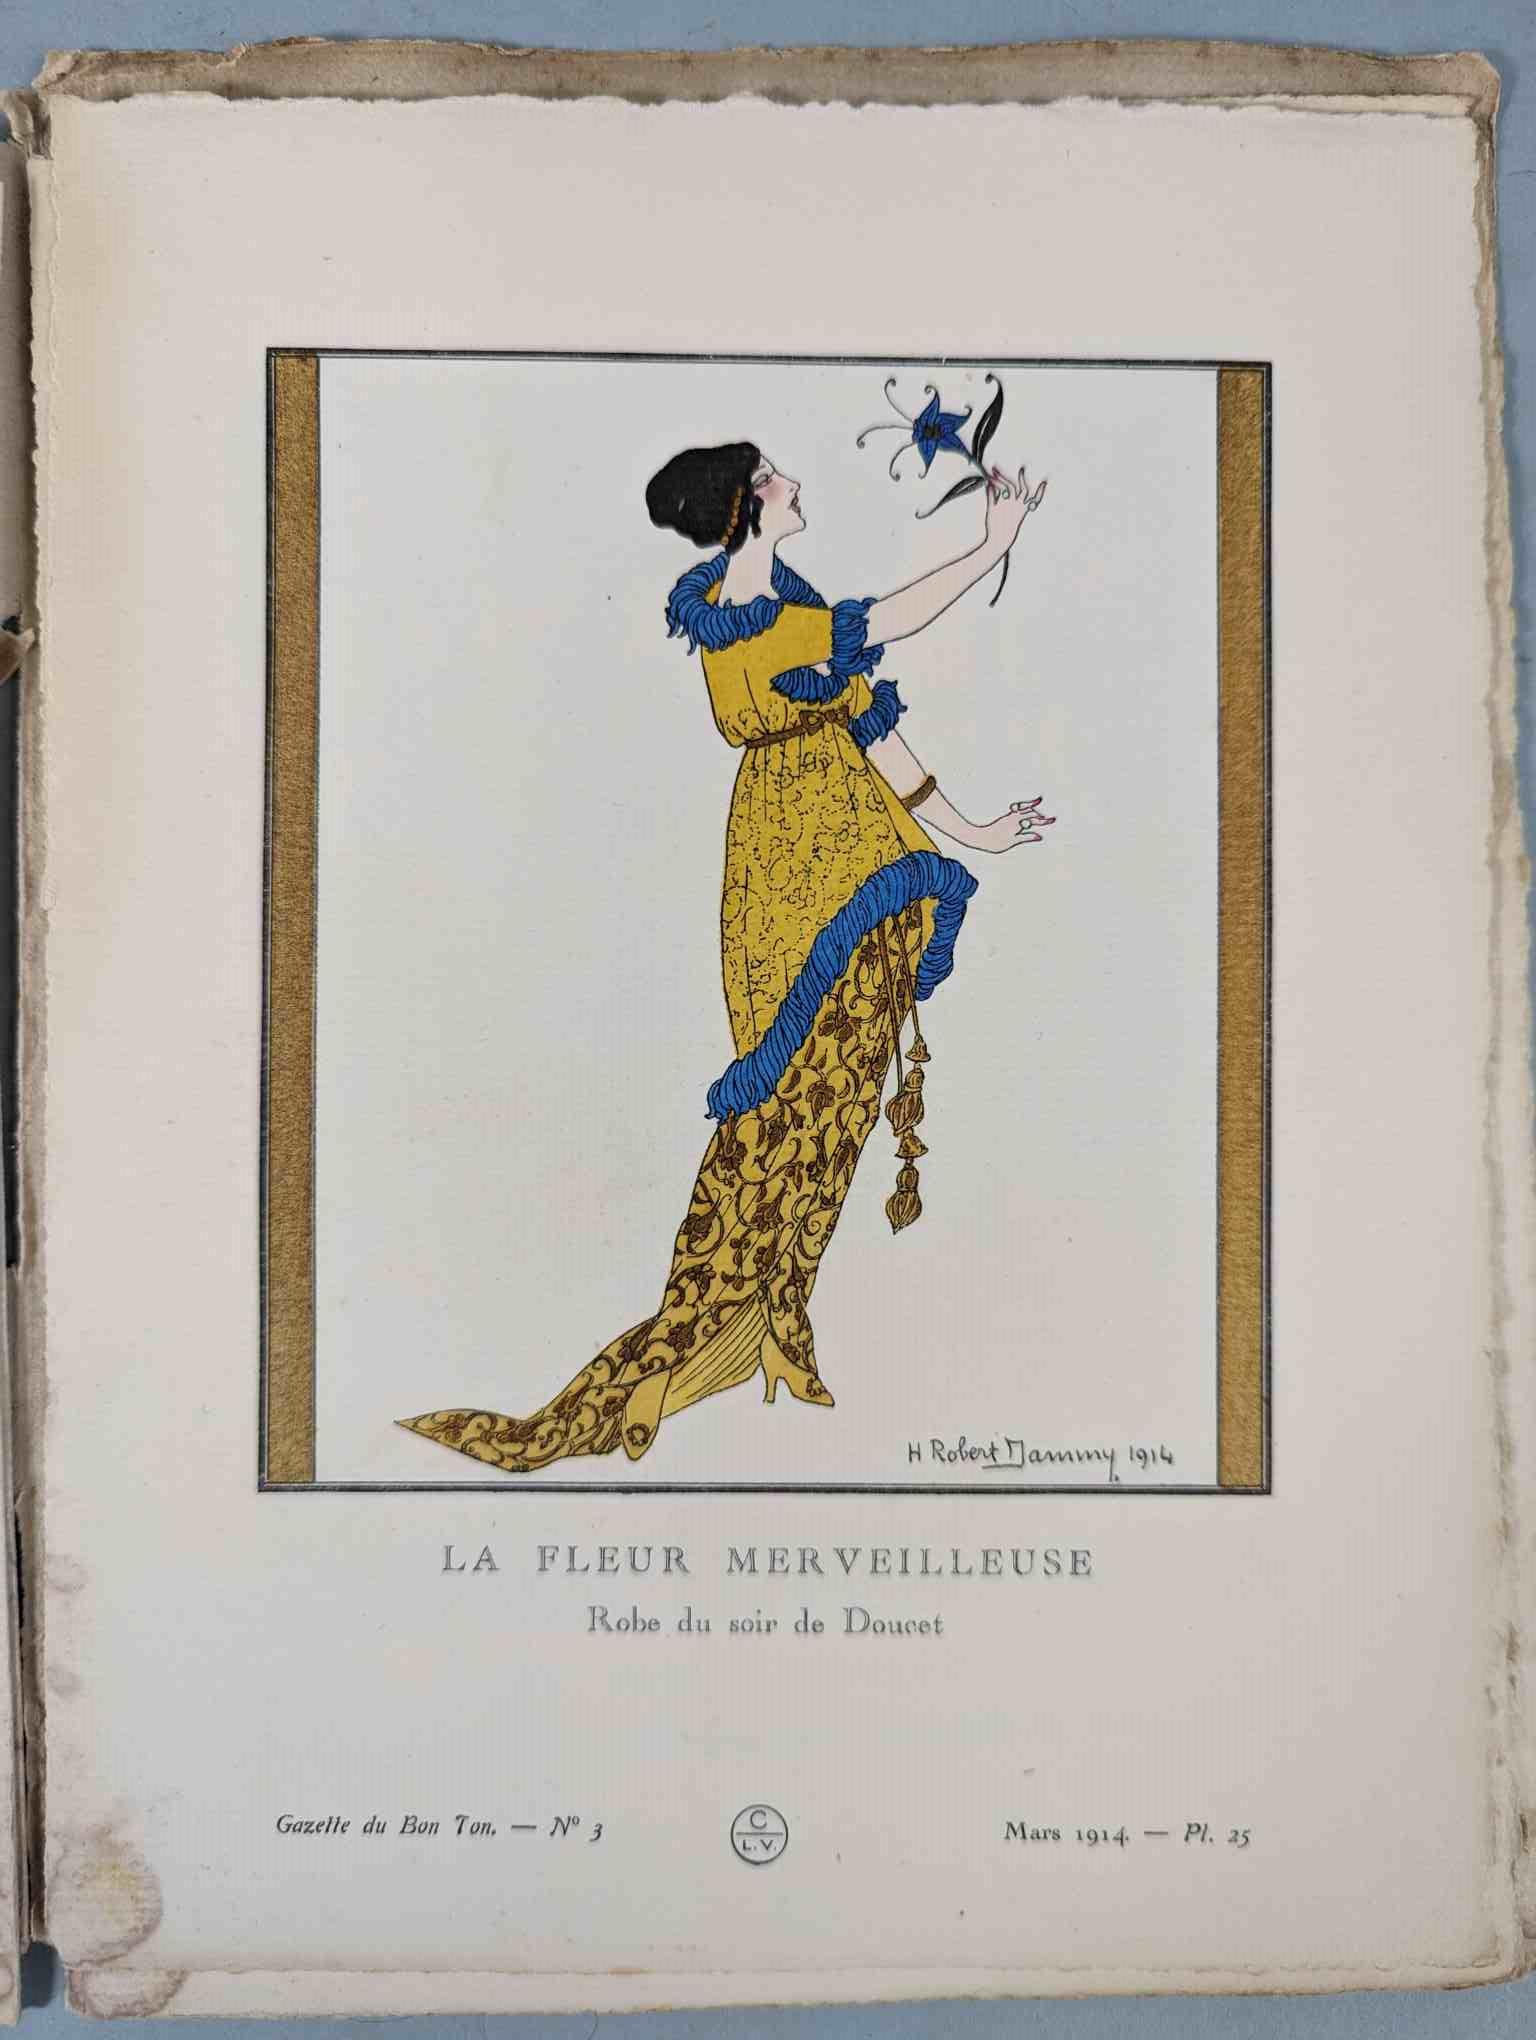 FASHION. VOGEL, Lucien. GAZETTE DU BON TON: Art-Modes & Frivolités, Paris 1913-14, 4 vol. - Image 25 of 54